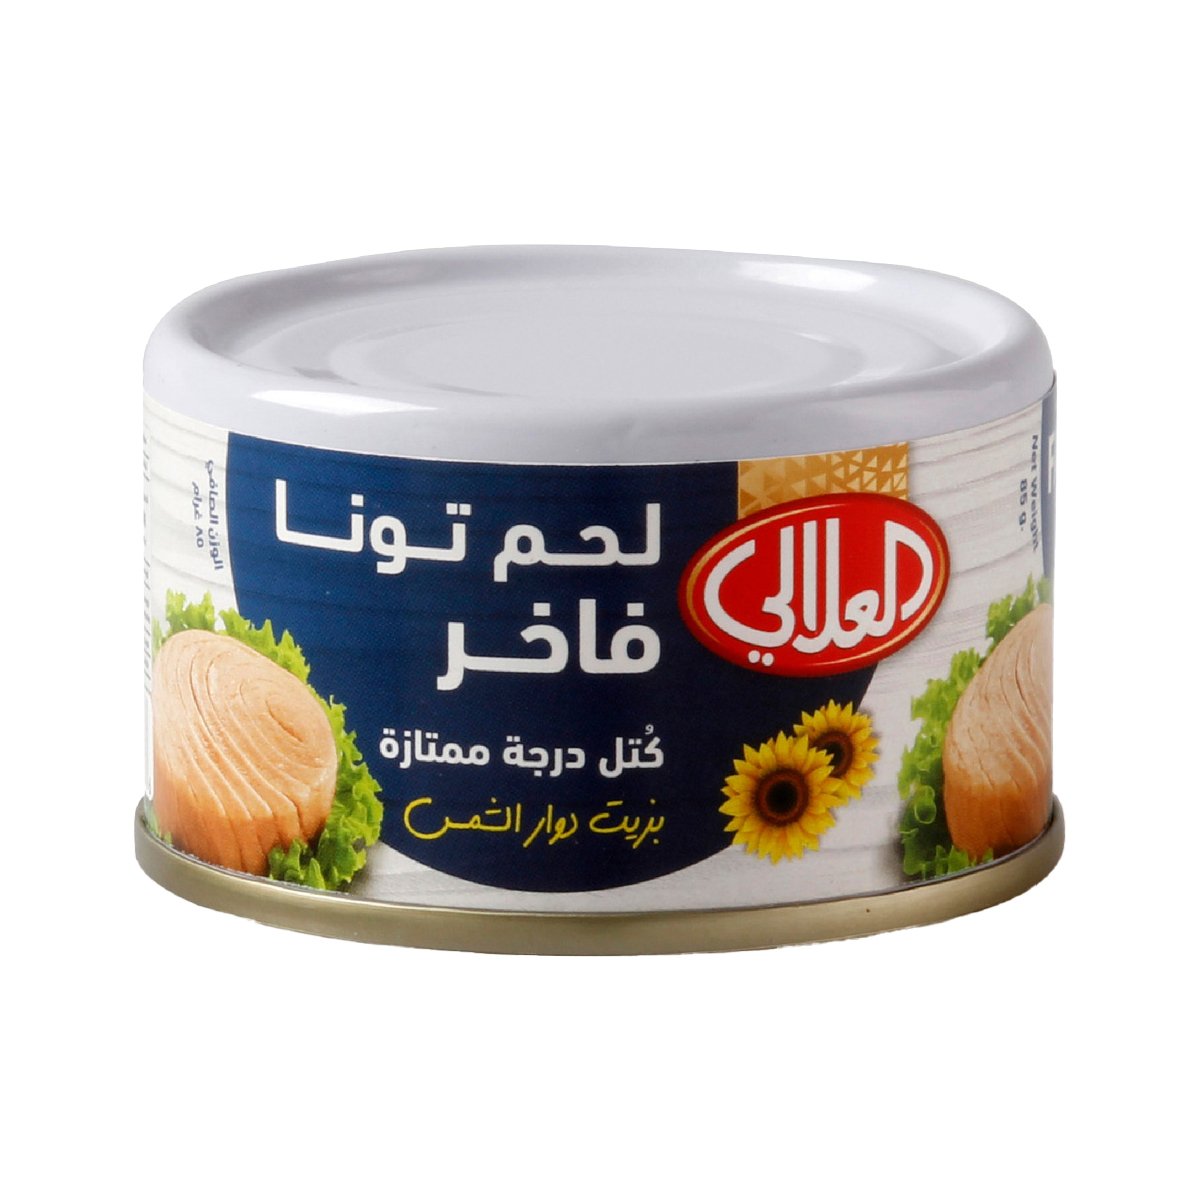 Al Alali Fancy Meat Tuna Solid Pack In Sunflower Oil 85 g